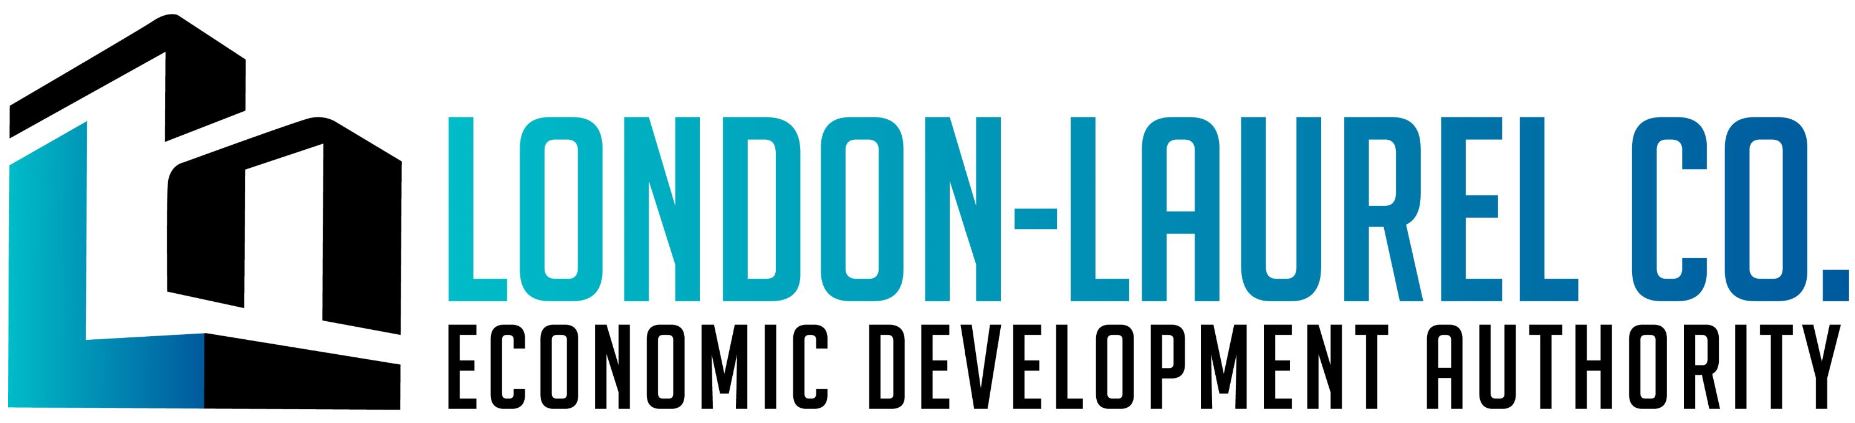 London Laurel Co Economic Development Authority London Laurel